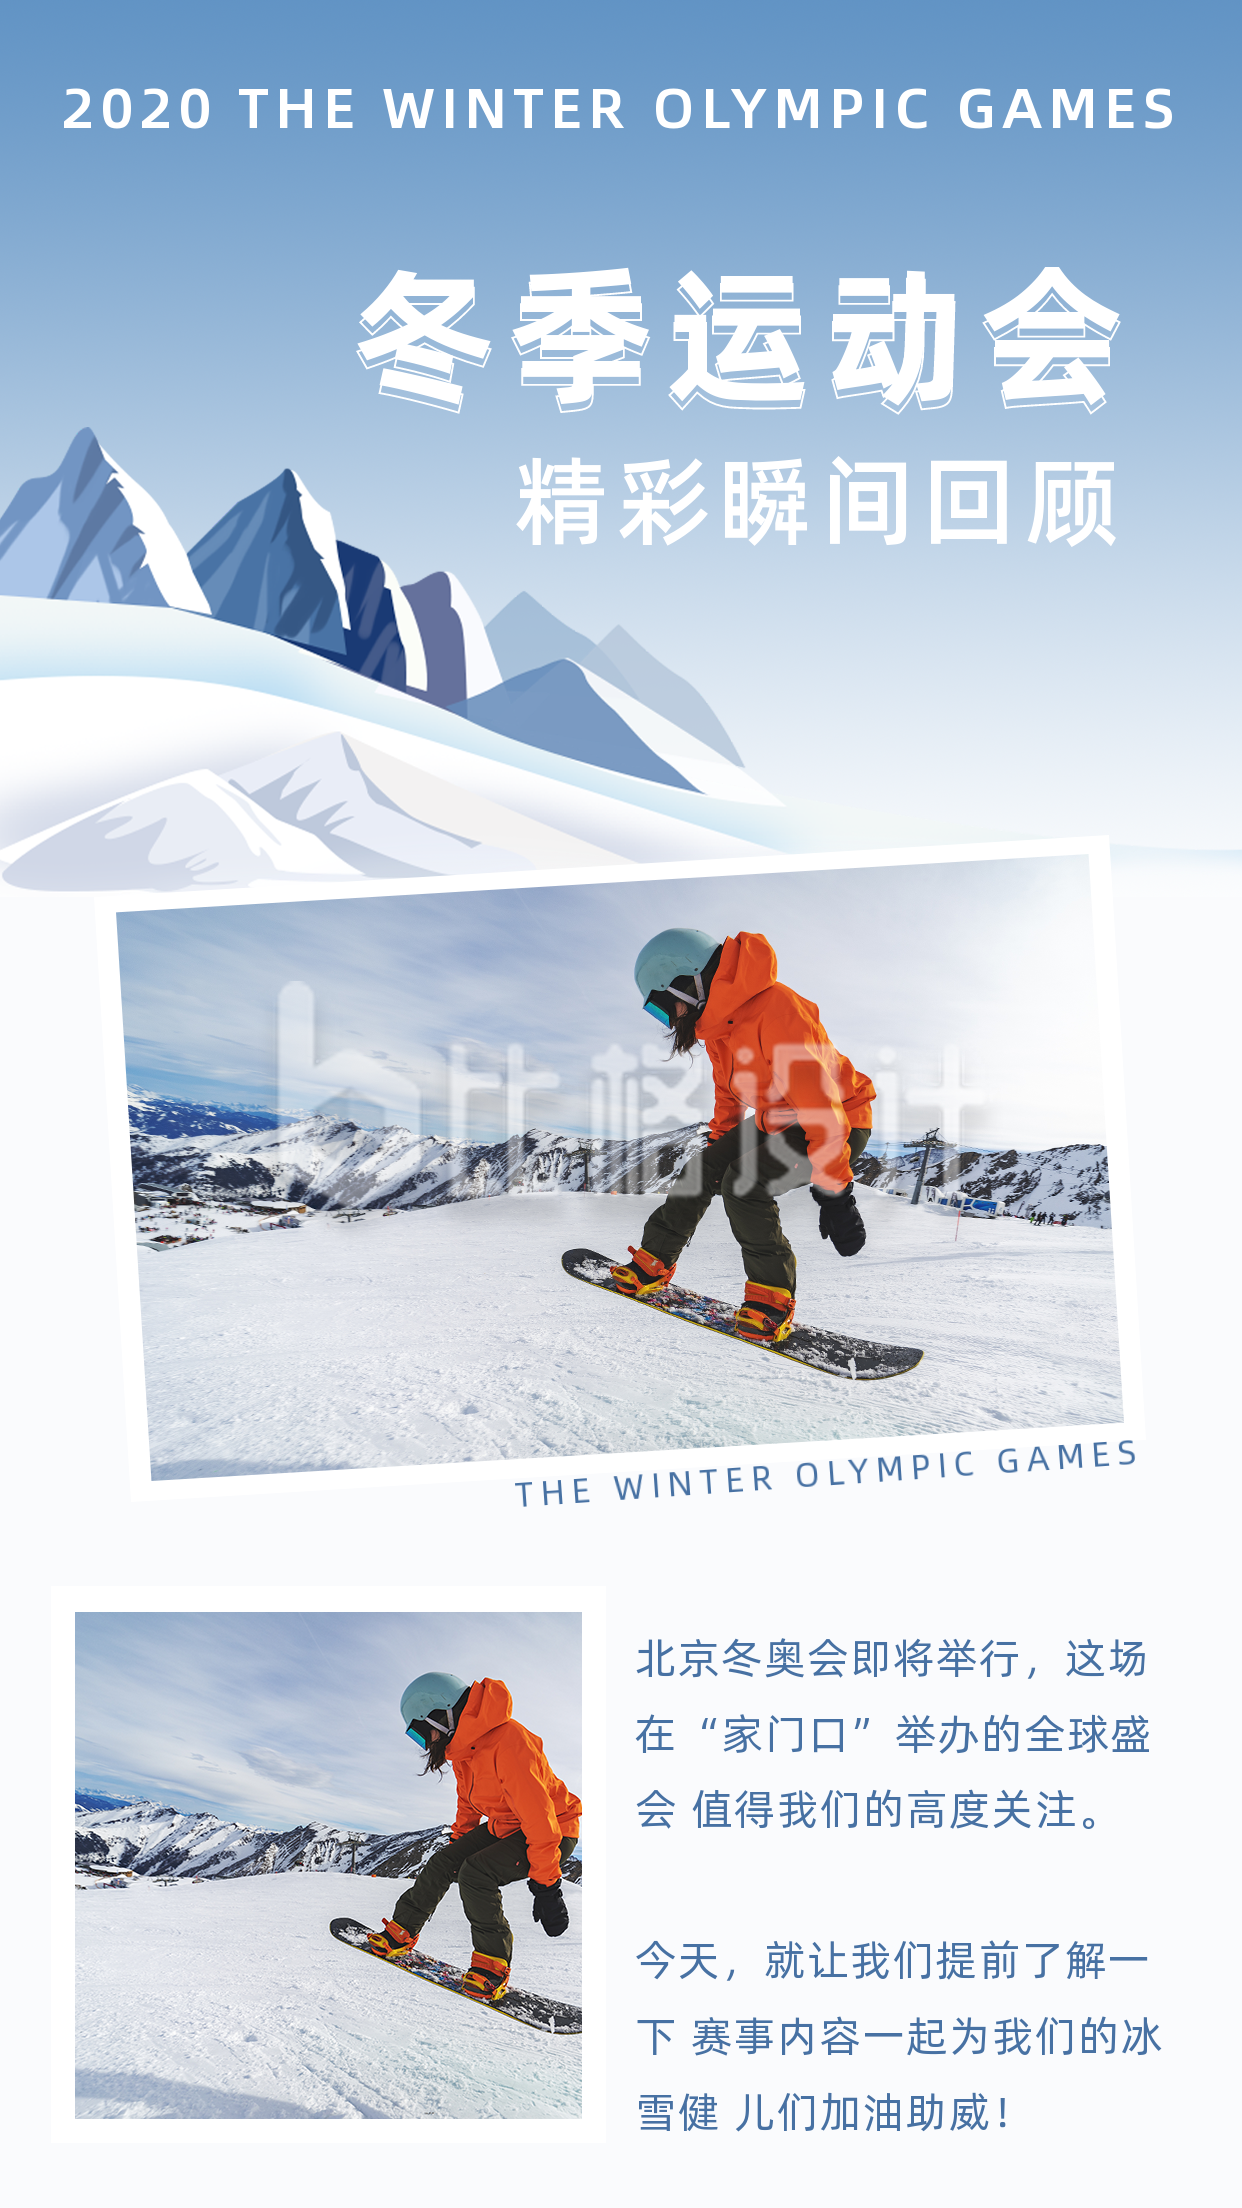 冬季运动会滑雪比赛精彩瞬间竖版配图